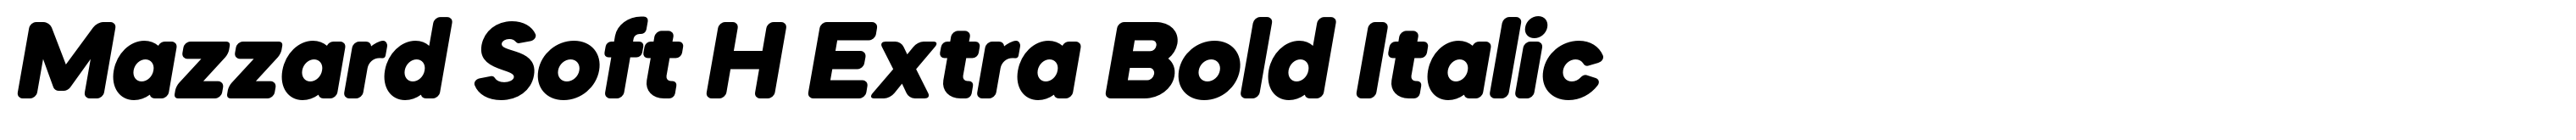 Mazzard Soft H Extra Bold Italic